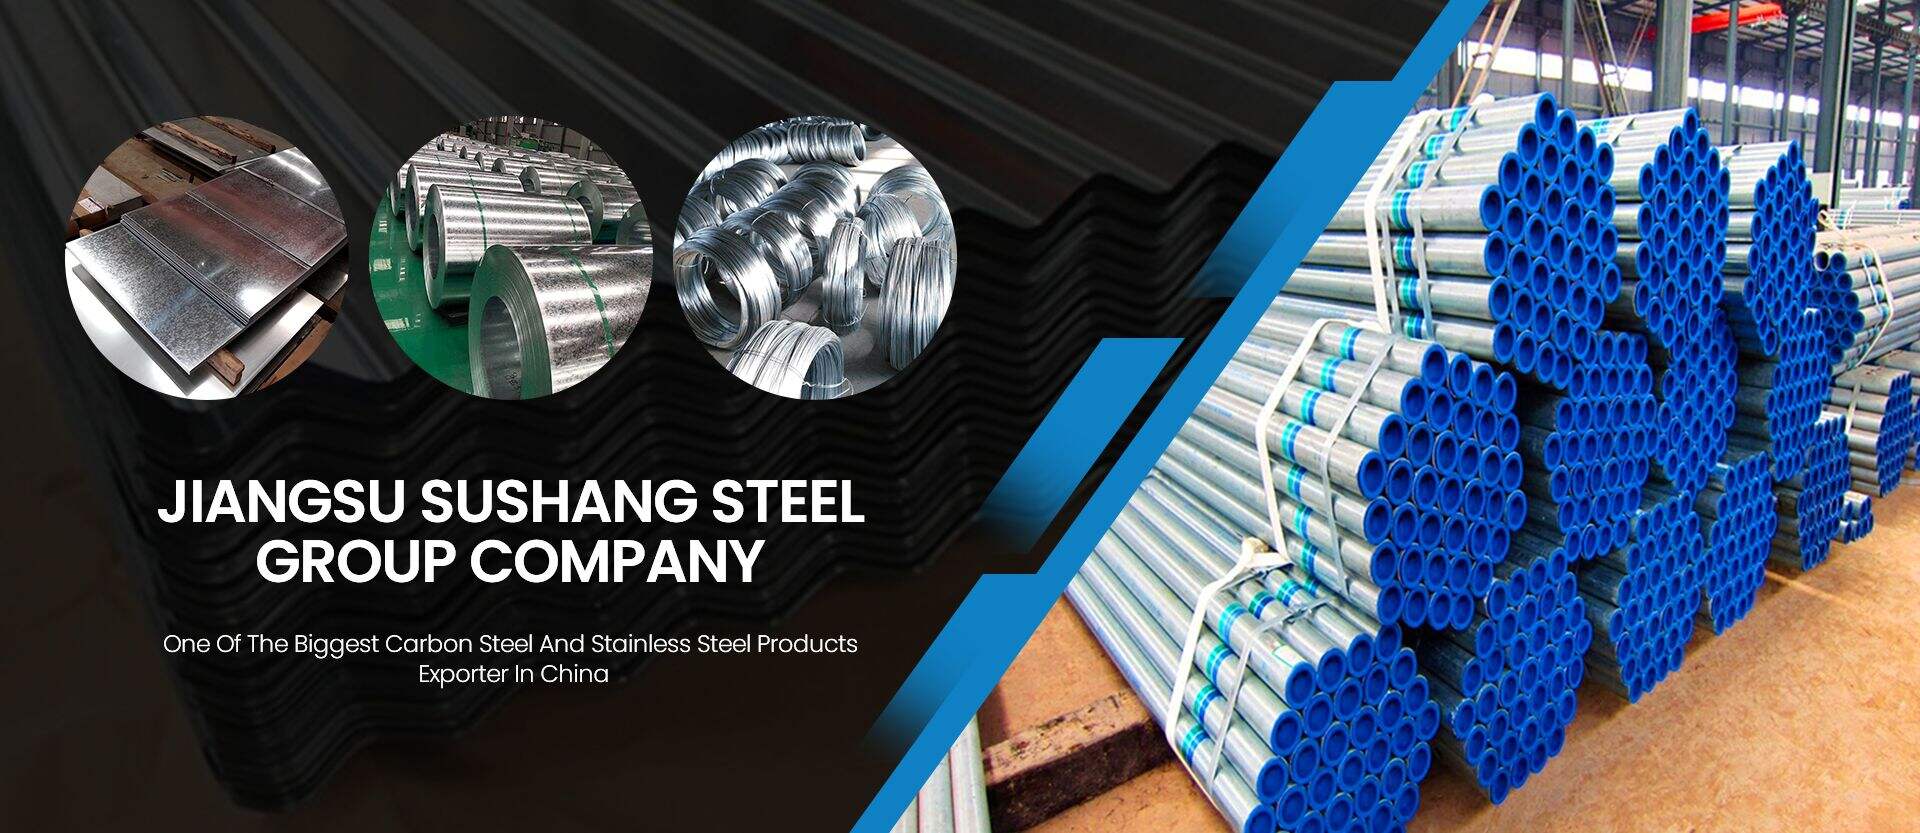 บริษัท Jiangsu Sushang Steel Group